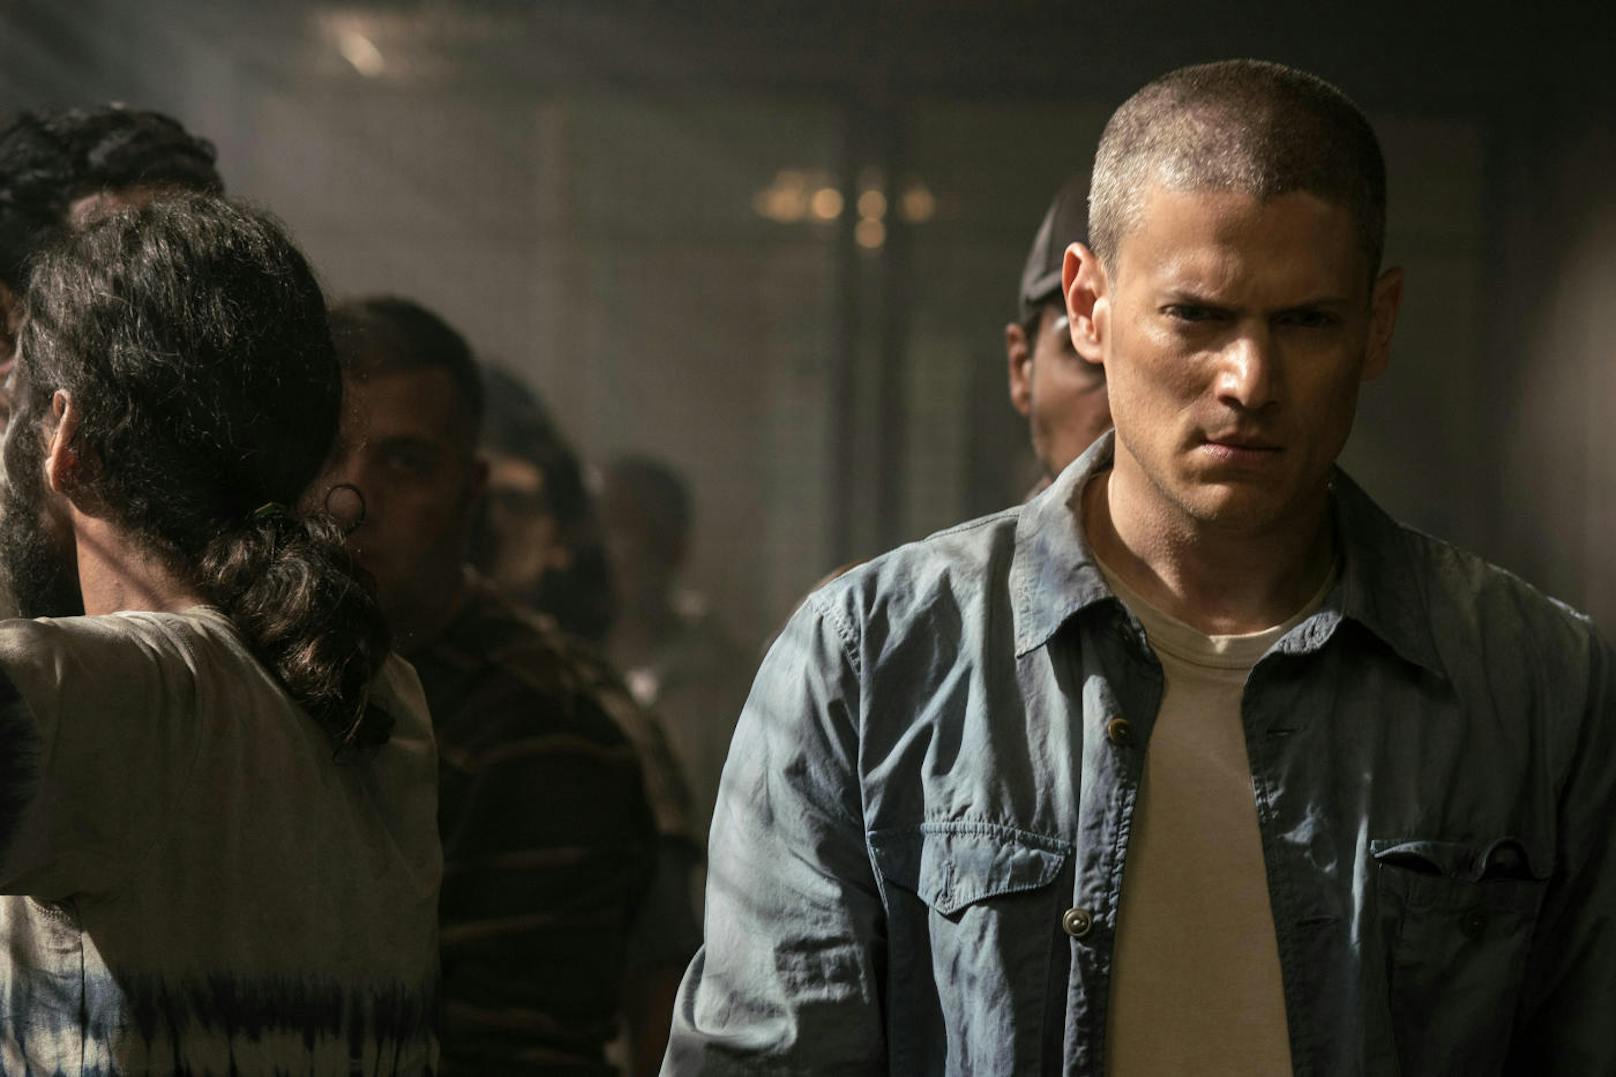 Totgeglaubt, in Wahrheit aber in Haft: Wentworth Miller als Michael Scofield in "Prison Break" - Season 5 (2017 Twentieth Century Fox Home Entertainment).